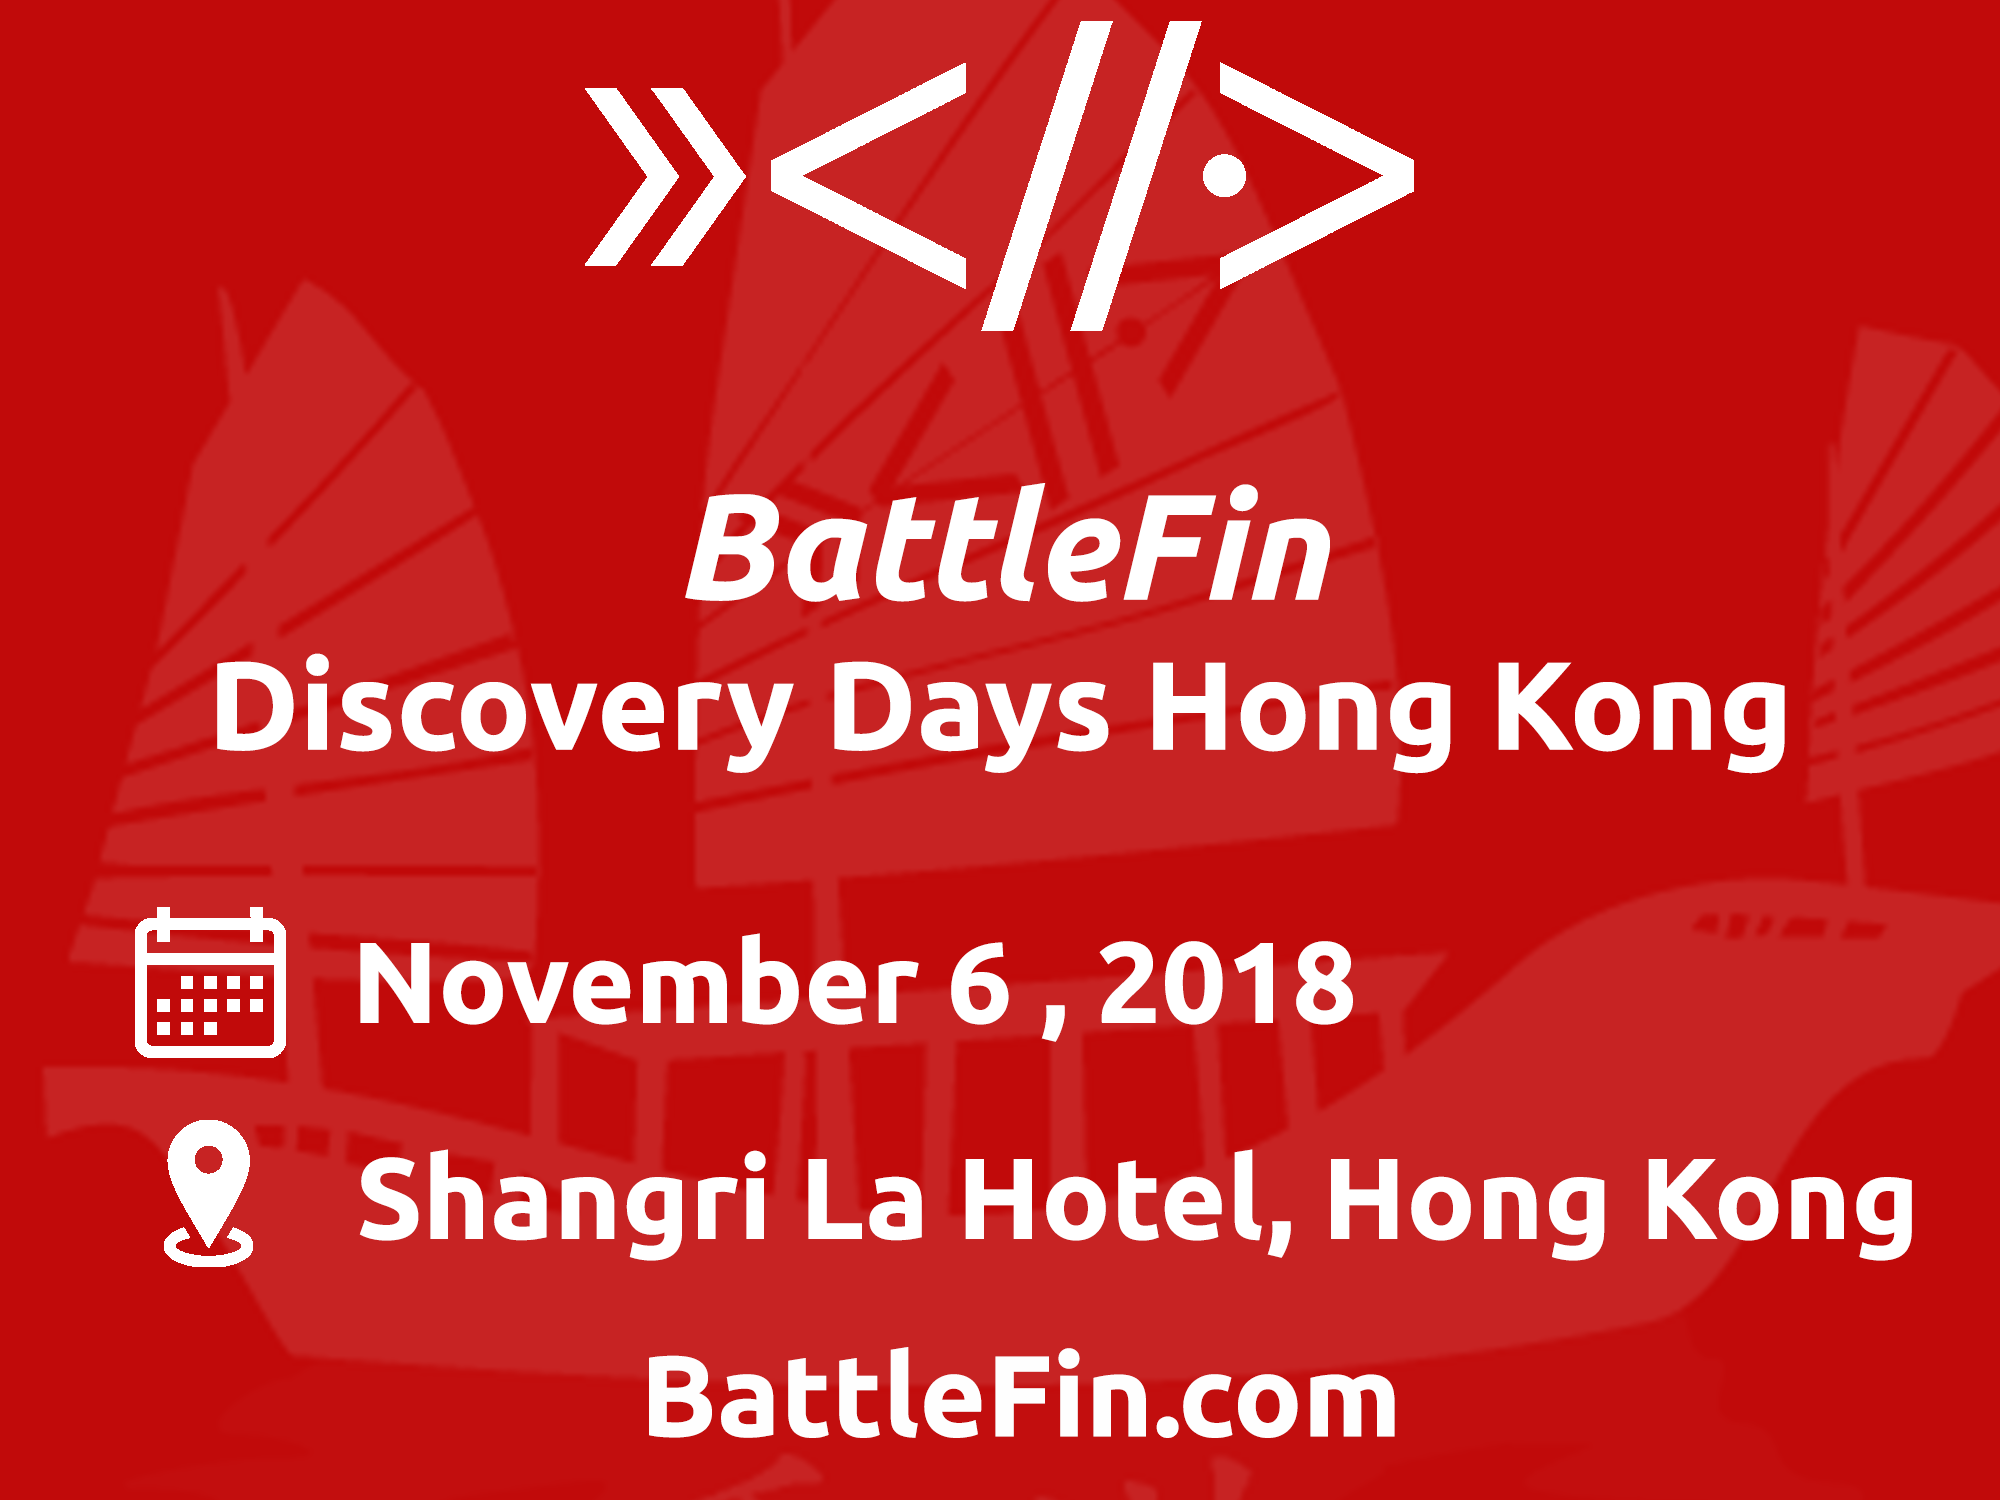 BattleFin Alternative Data Discovery Day Hong Kong 2018 organized by BattleFin